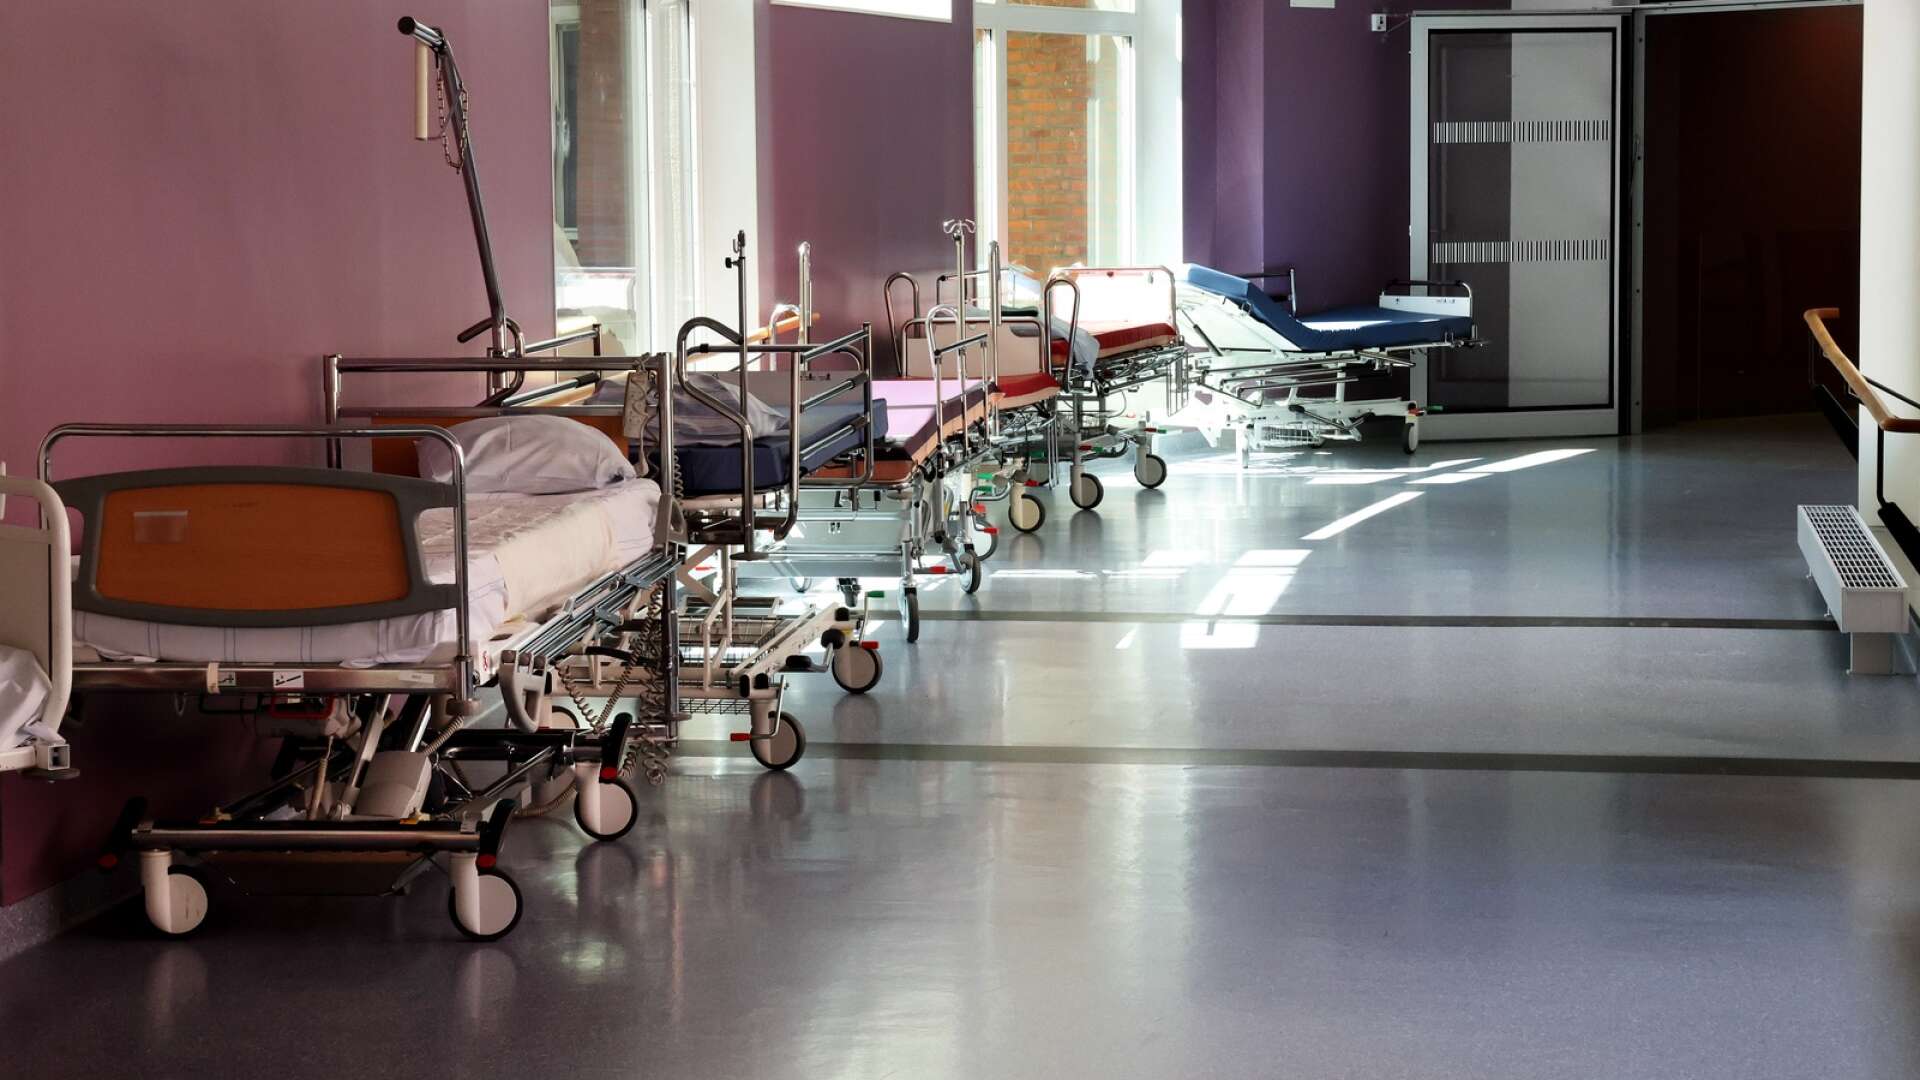 Under två sommarveckor var det så överbelagt på medicinavdelningen i Lidköping att patienter fick ligga i både korridorer och väntrum.